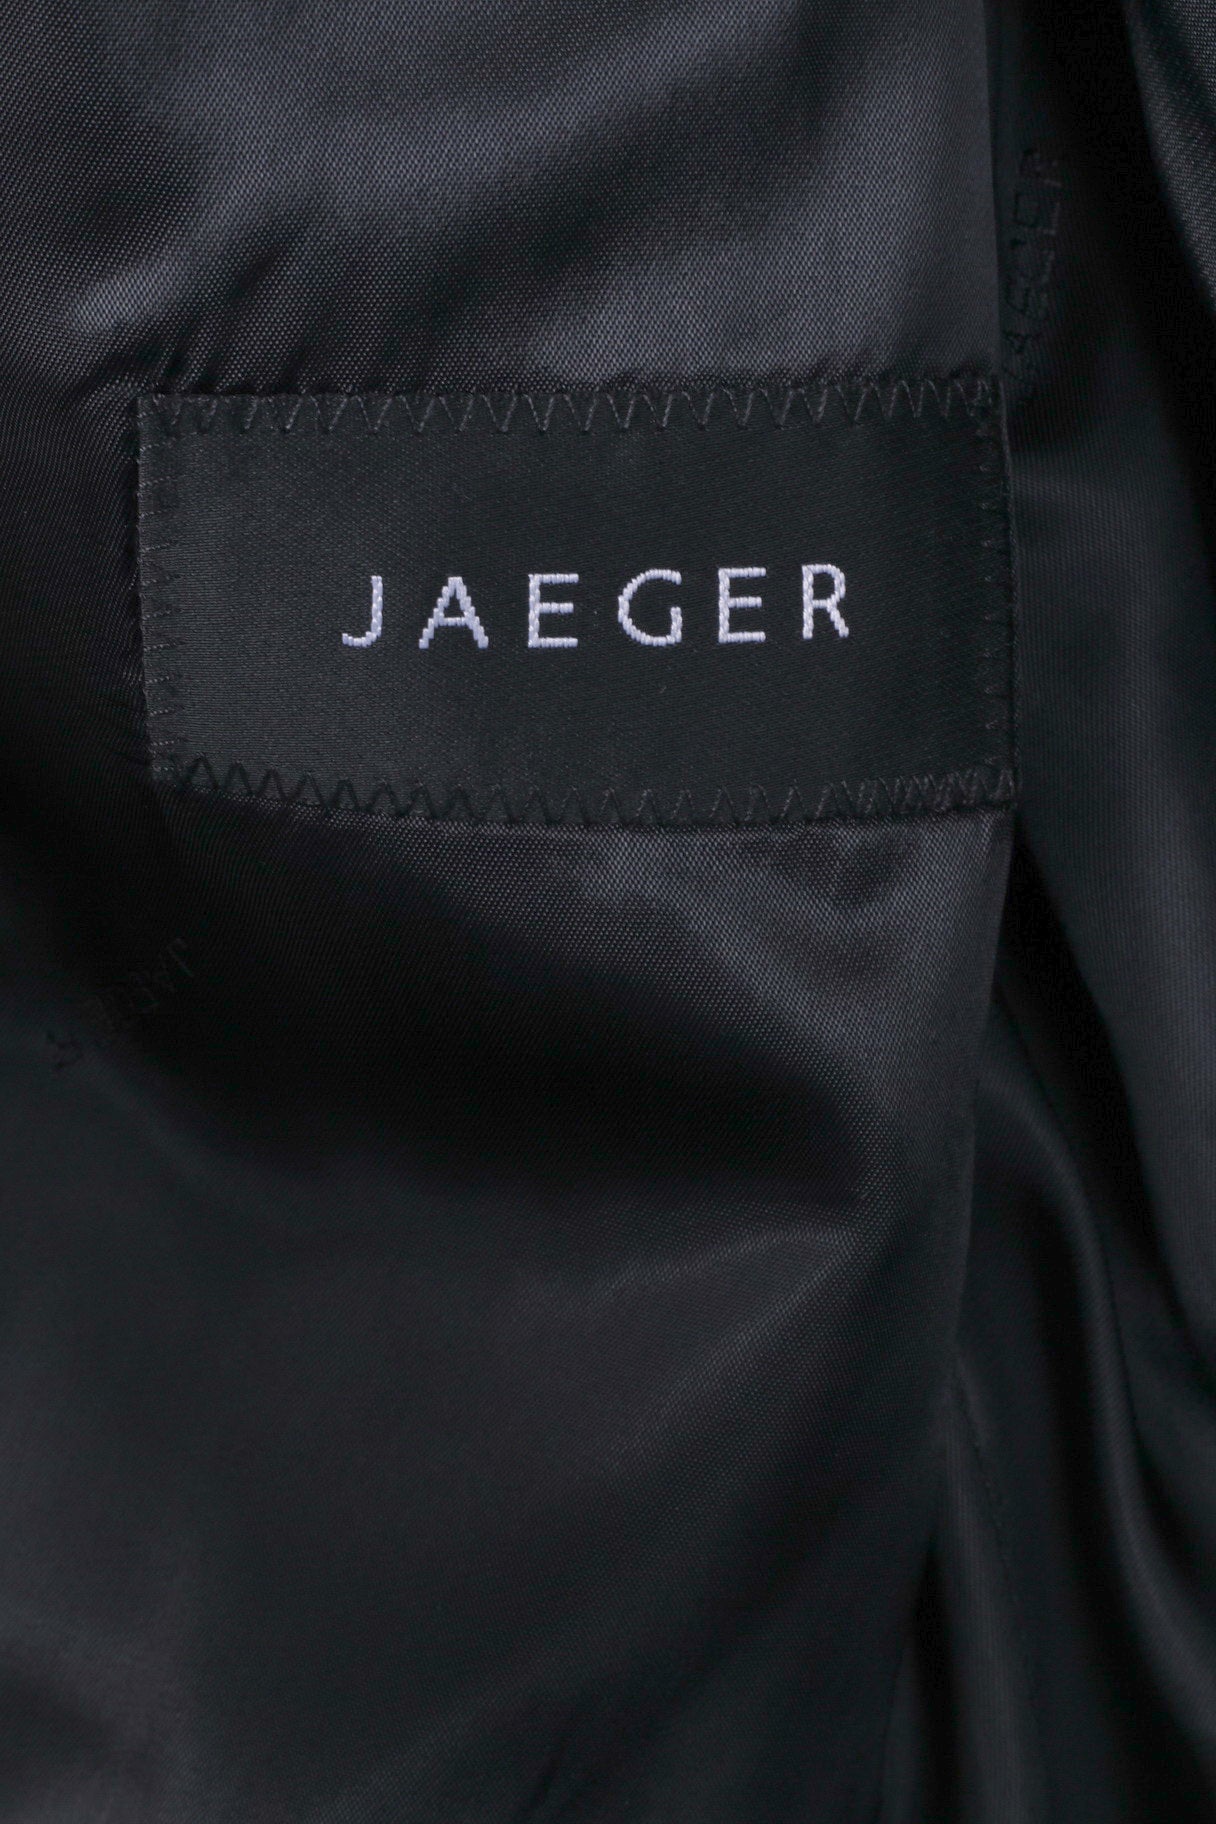 Jaeger Hommes 40 Long Blazer Gris Simple Boutonnage Top Épaulettes 100% Laine Veste 